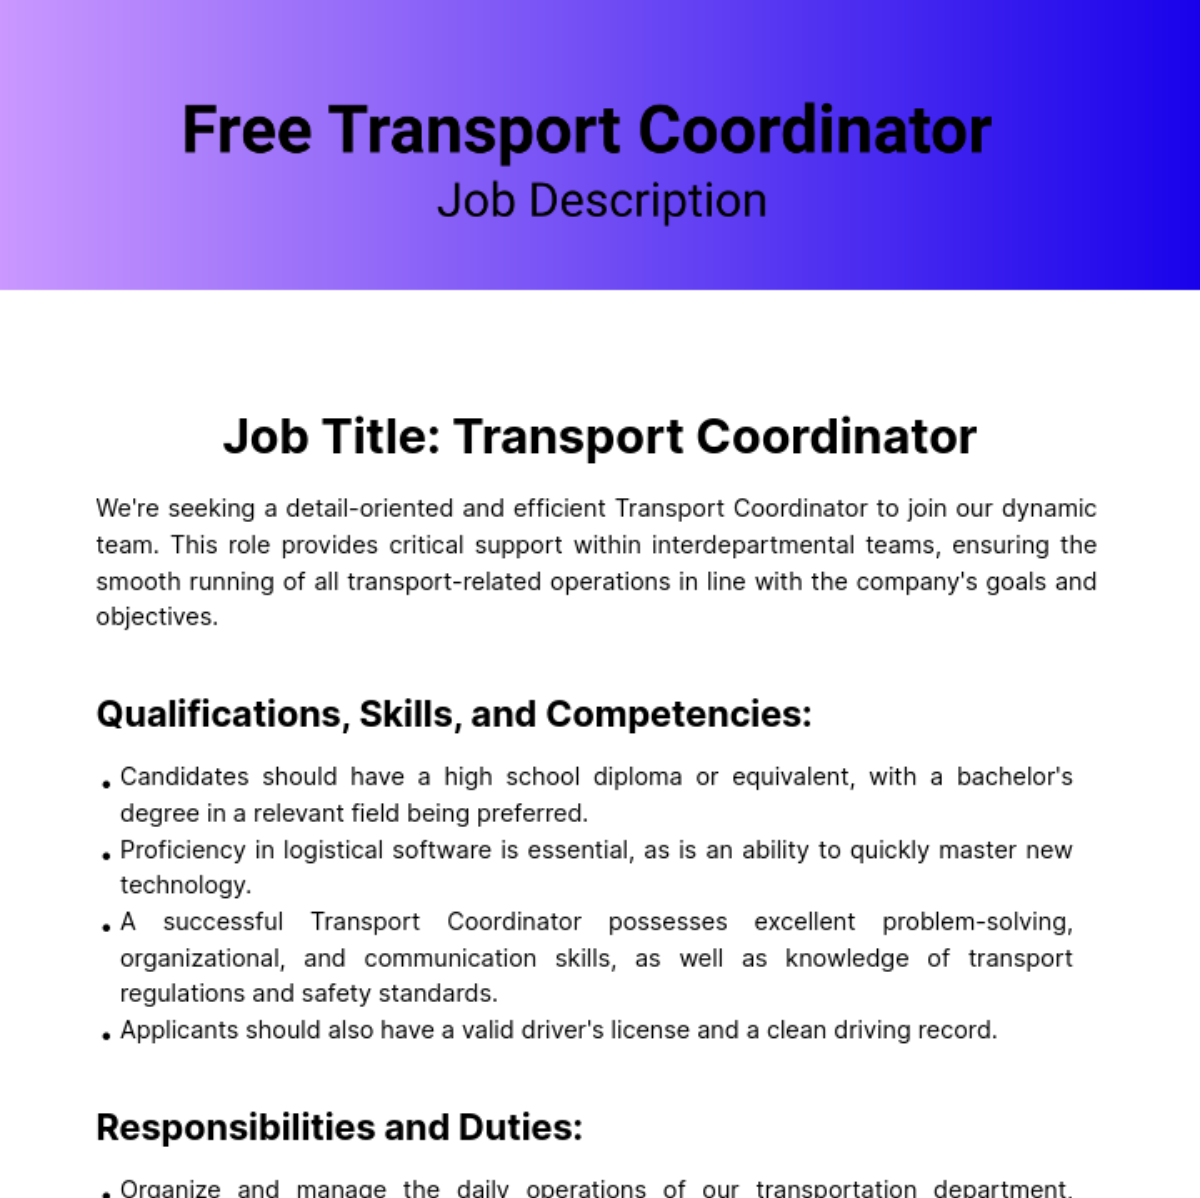 Free Transport Coordinator Job Description Template